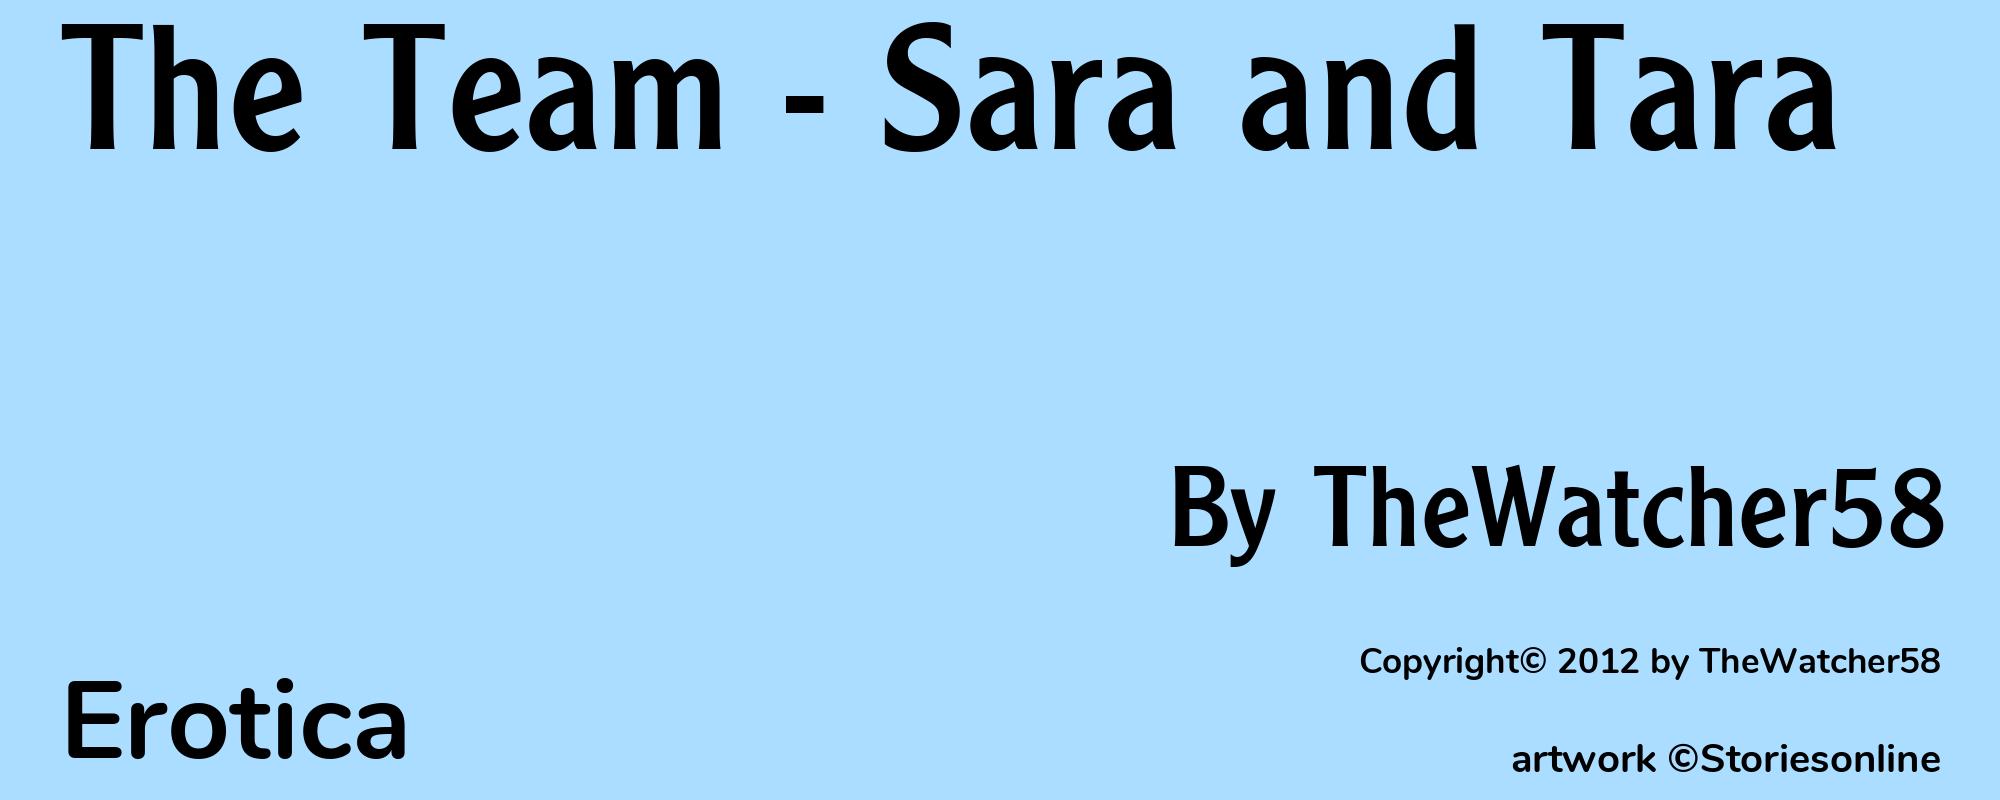 The Team - Sara and Tara - Cover